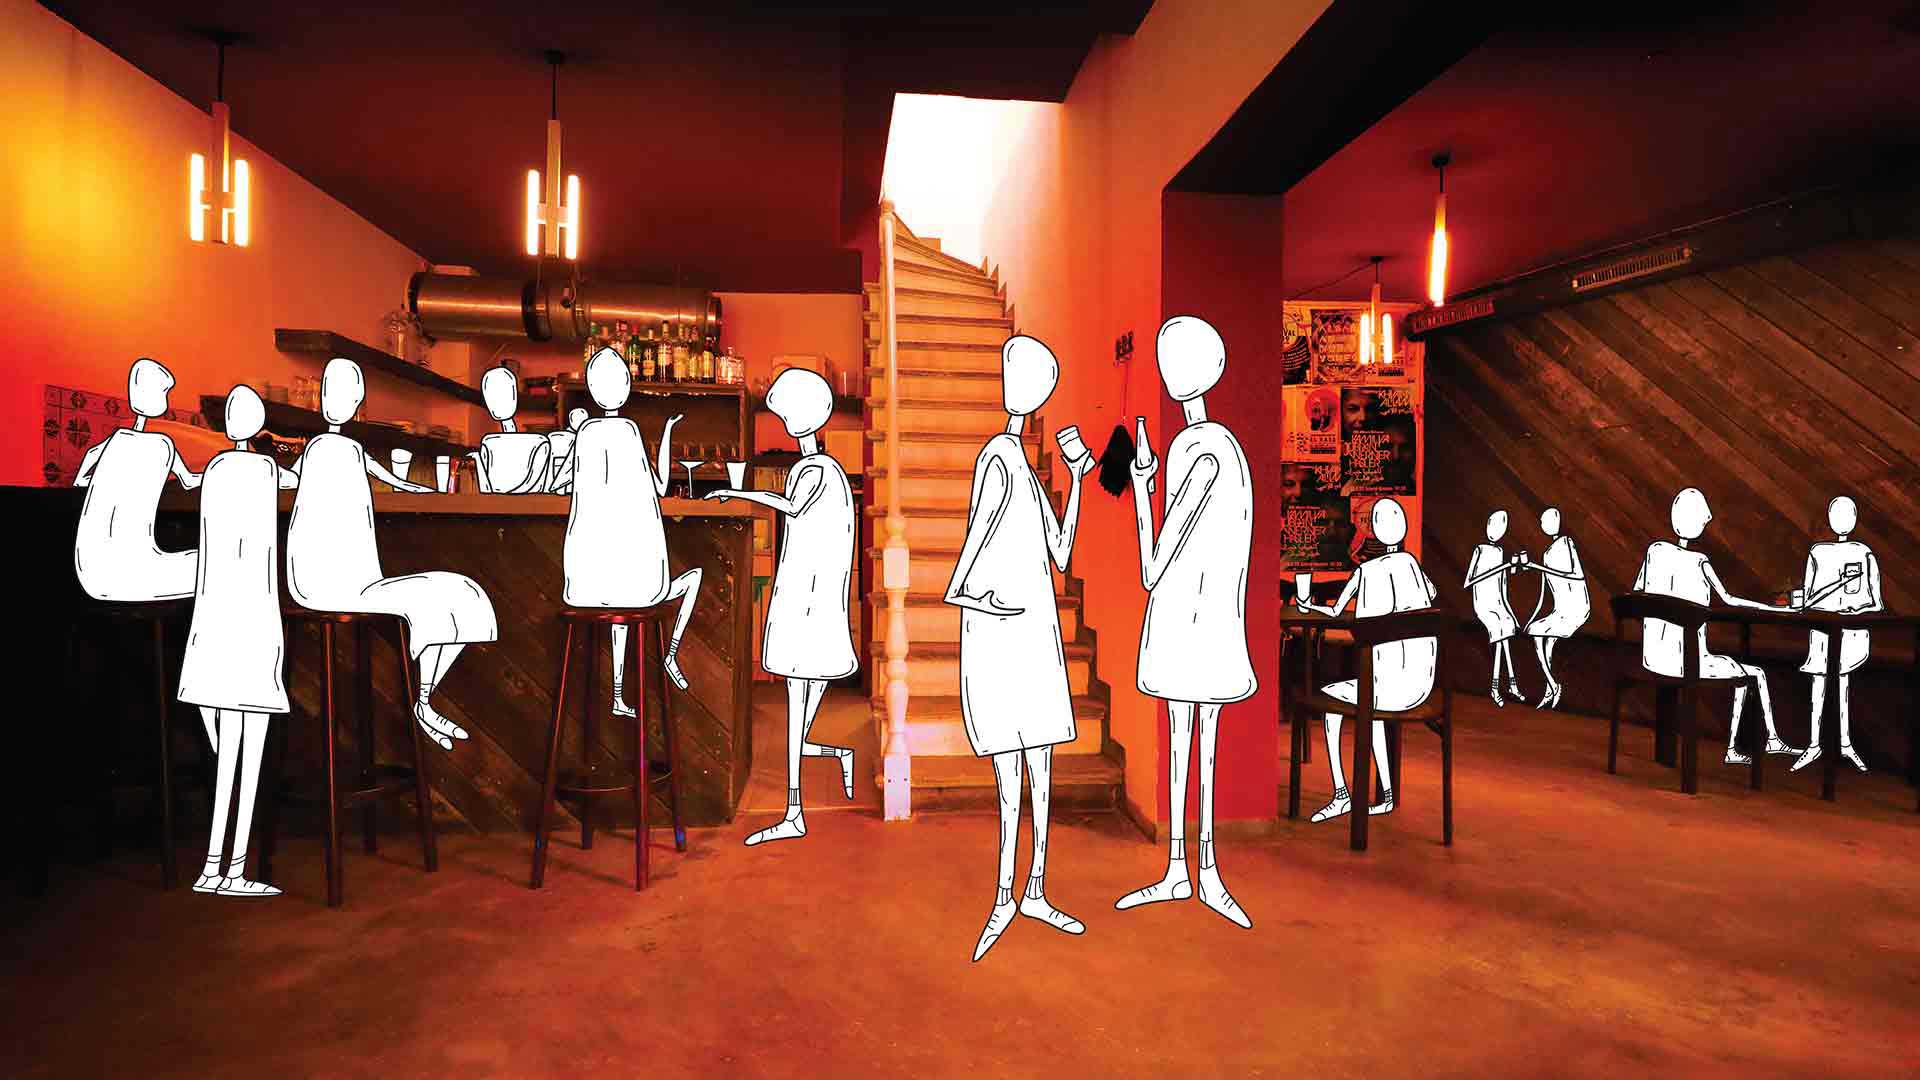 AL Berlin Cafe Bar Illustrated by Krishan